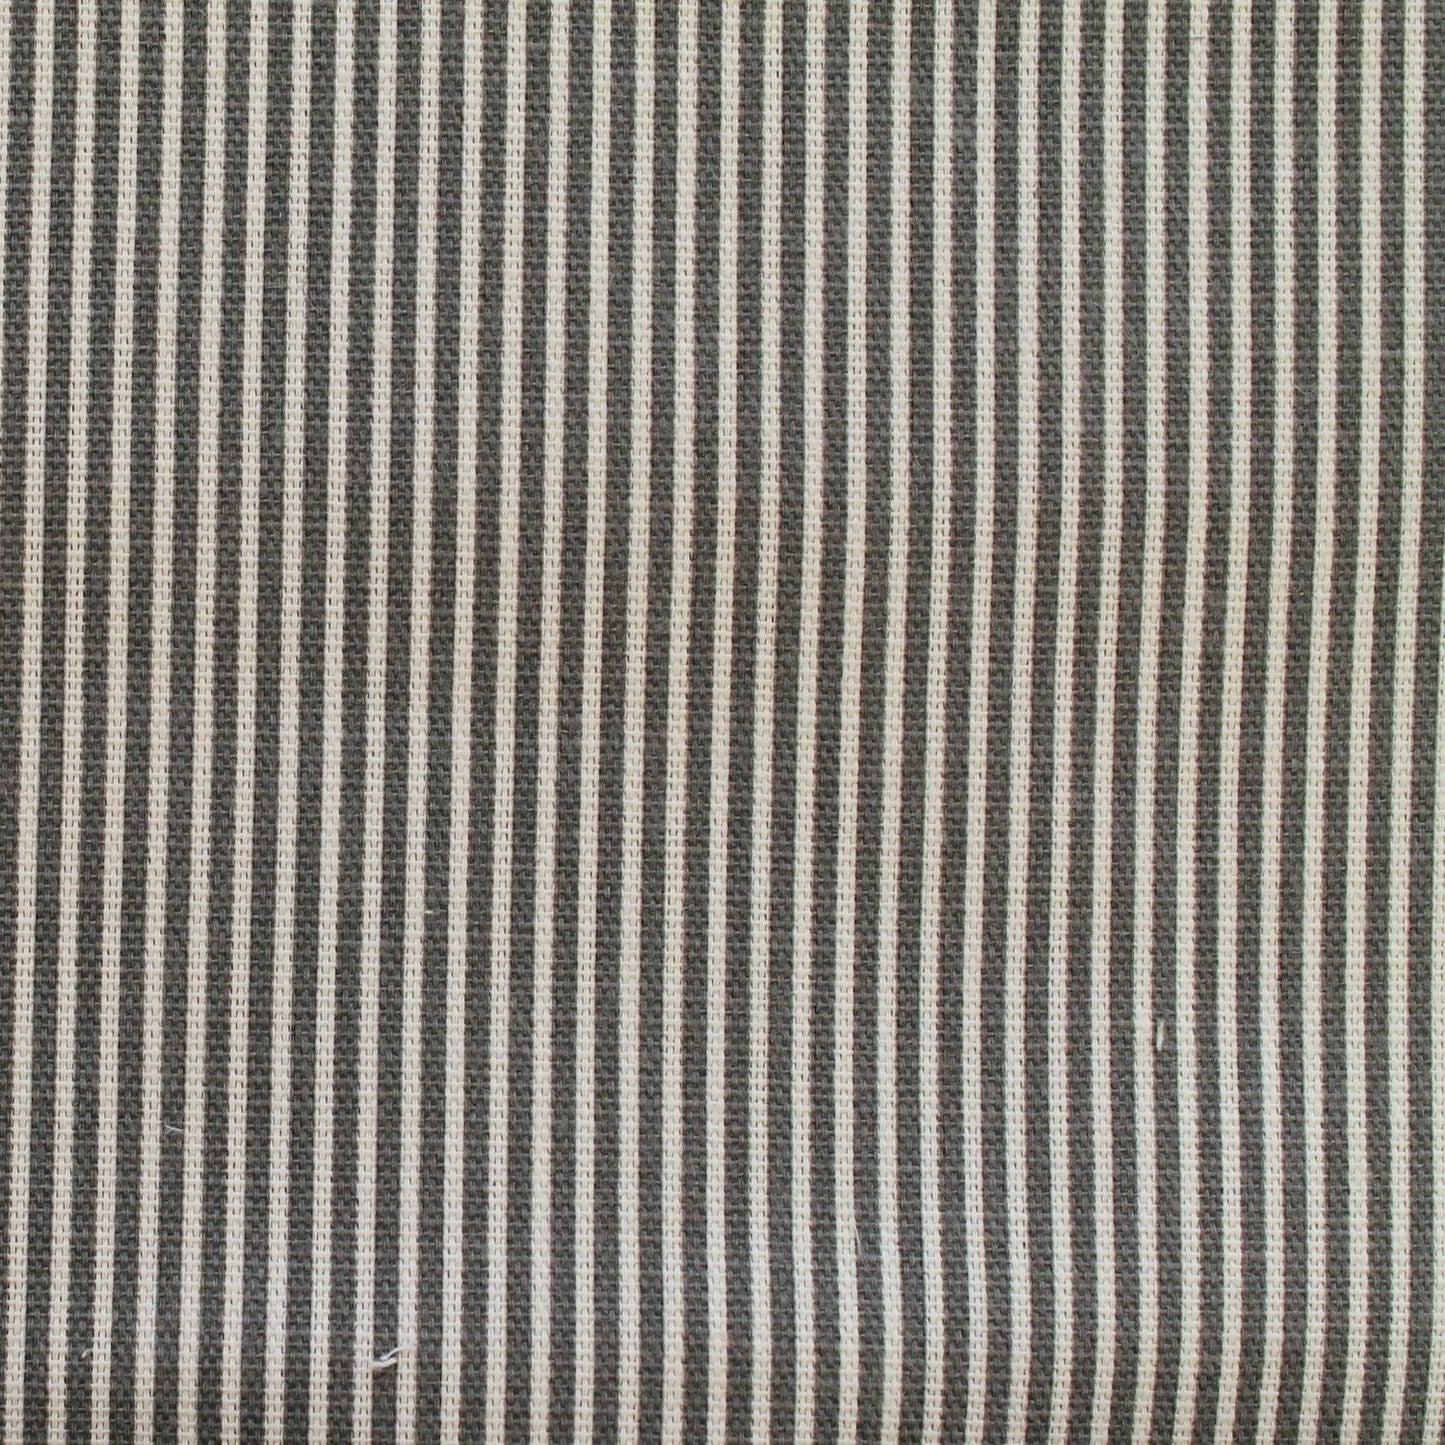 Ticking Fabric Cotton Canvas Duck Honey Dark Grey